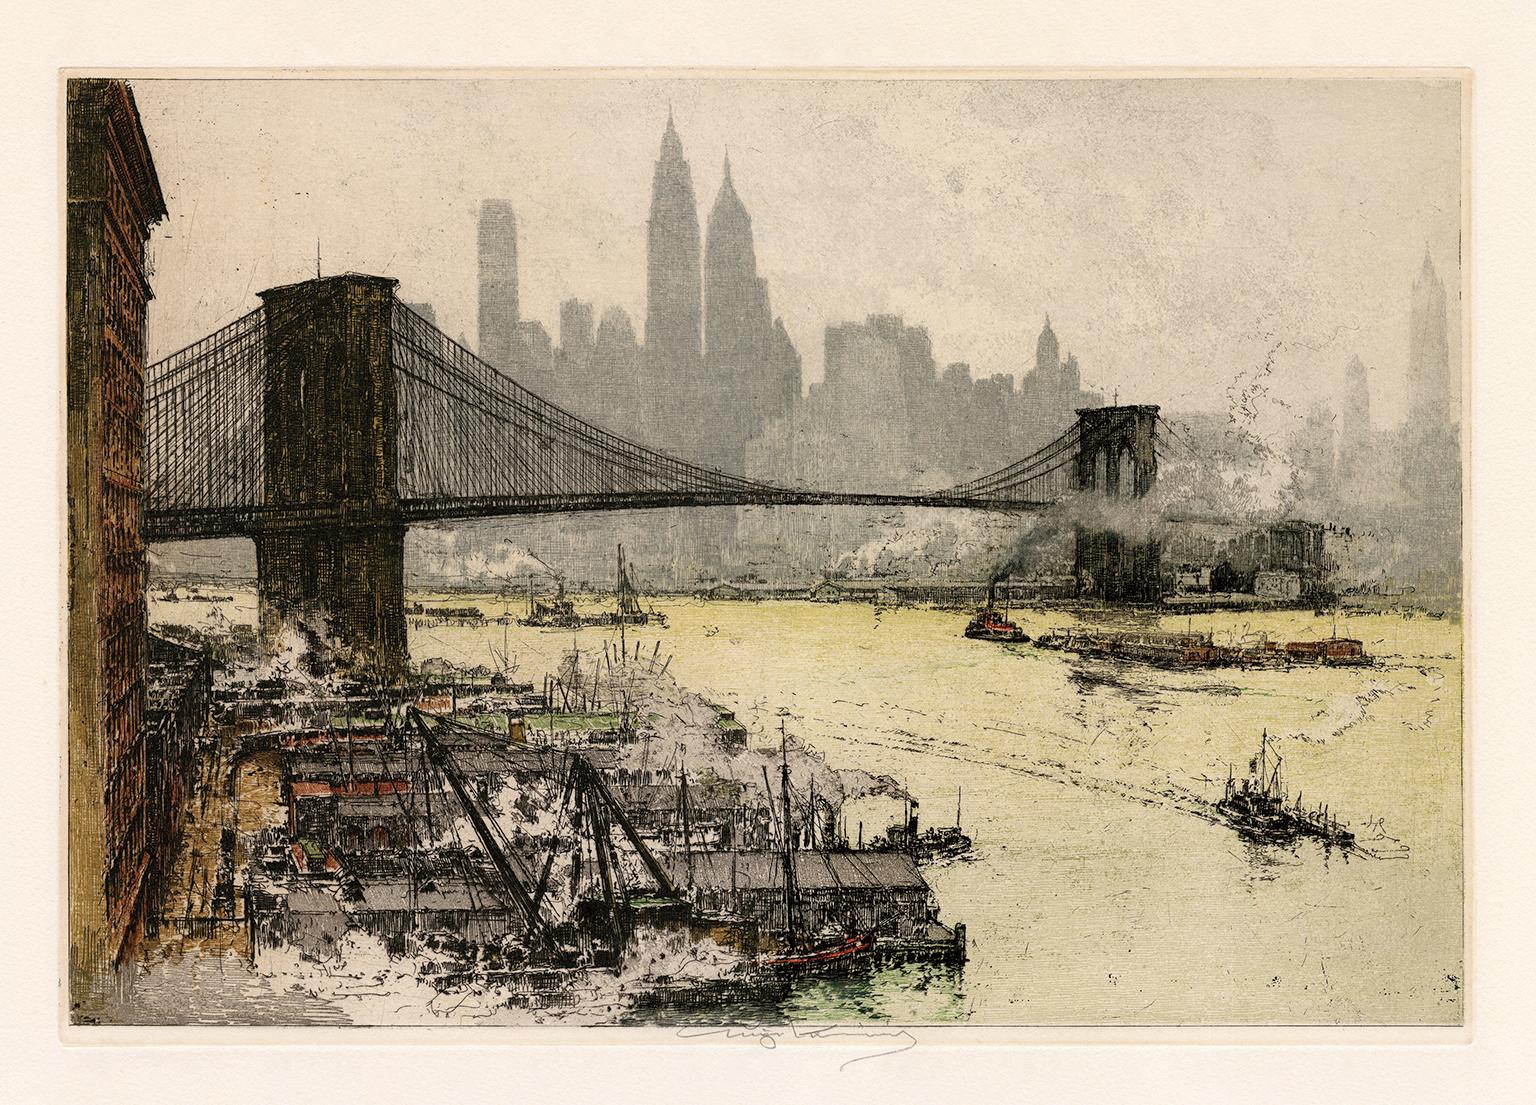 Brooklyn Bridge" - Ansicht eines ikonischen Wahrzeichens von New York City aus den 1920er Jahren